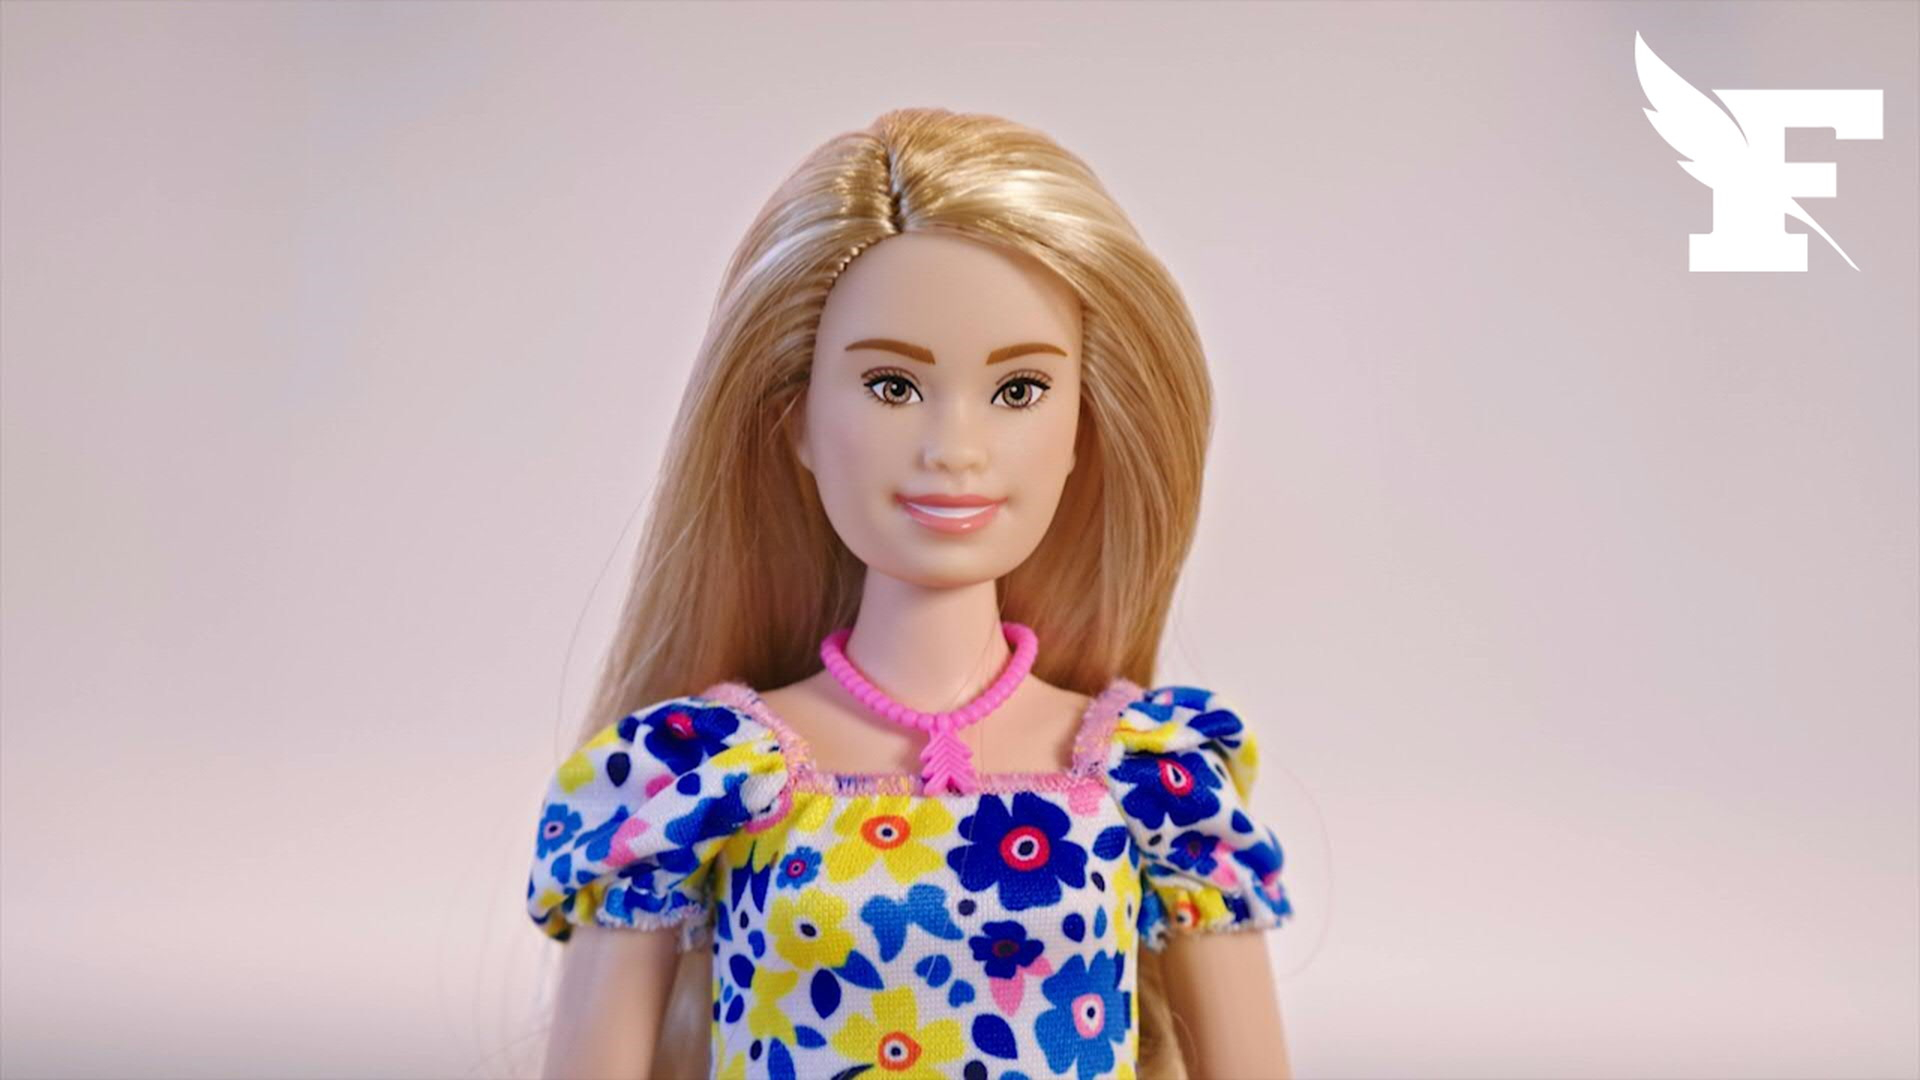 Le féminisme version Mattel, nouvelle arme de promotion de Barbie